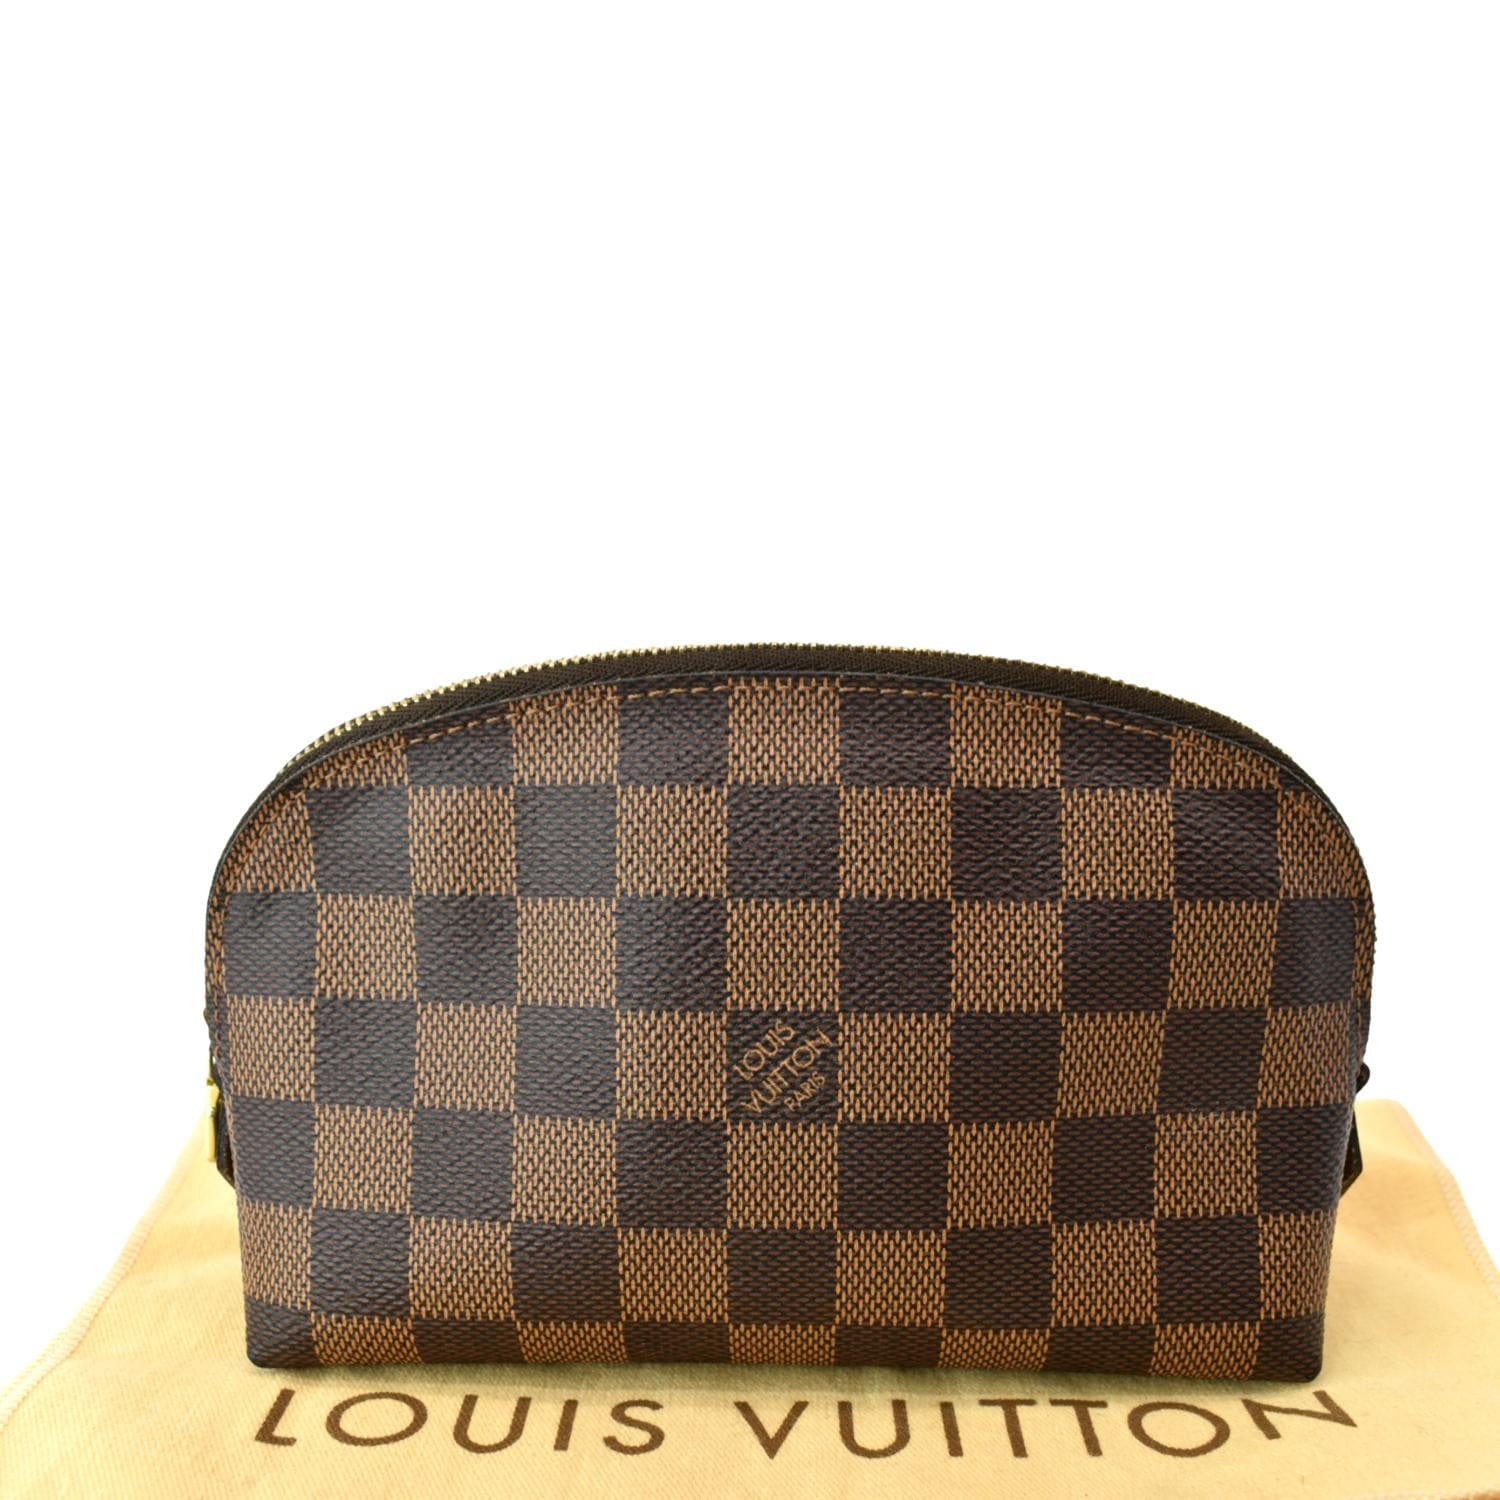 Louis Vuitton - Excellent - Damier Ebene Cosmetic - Depop